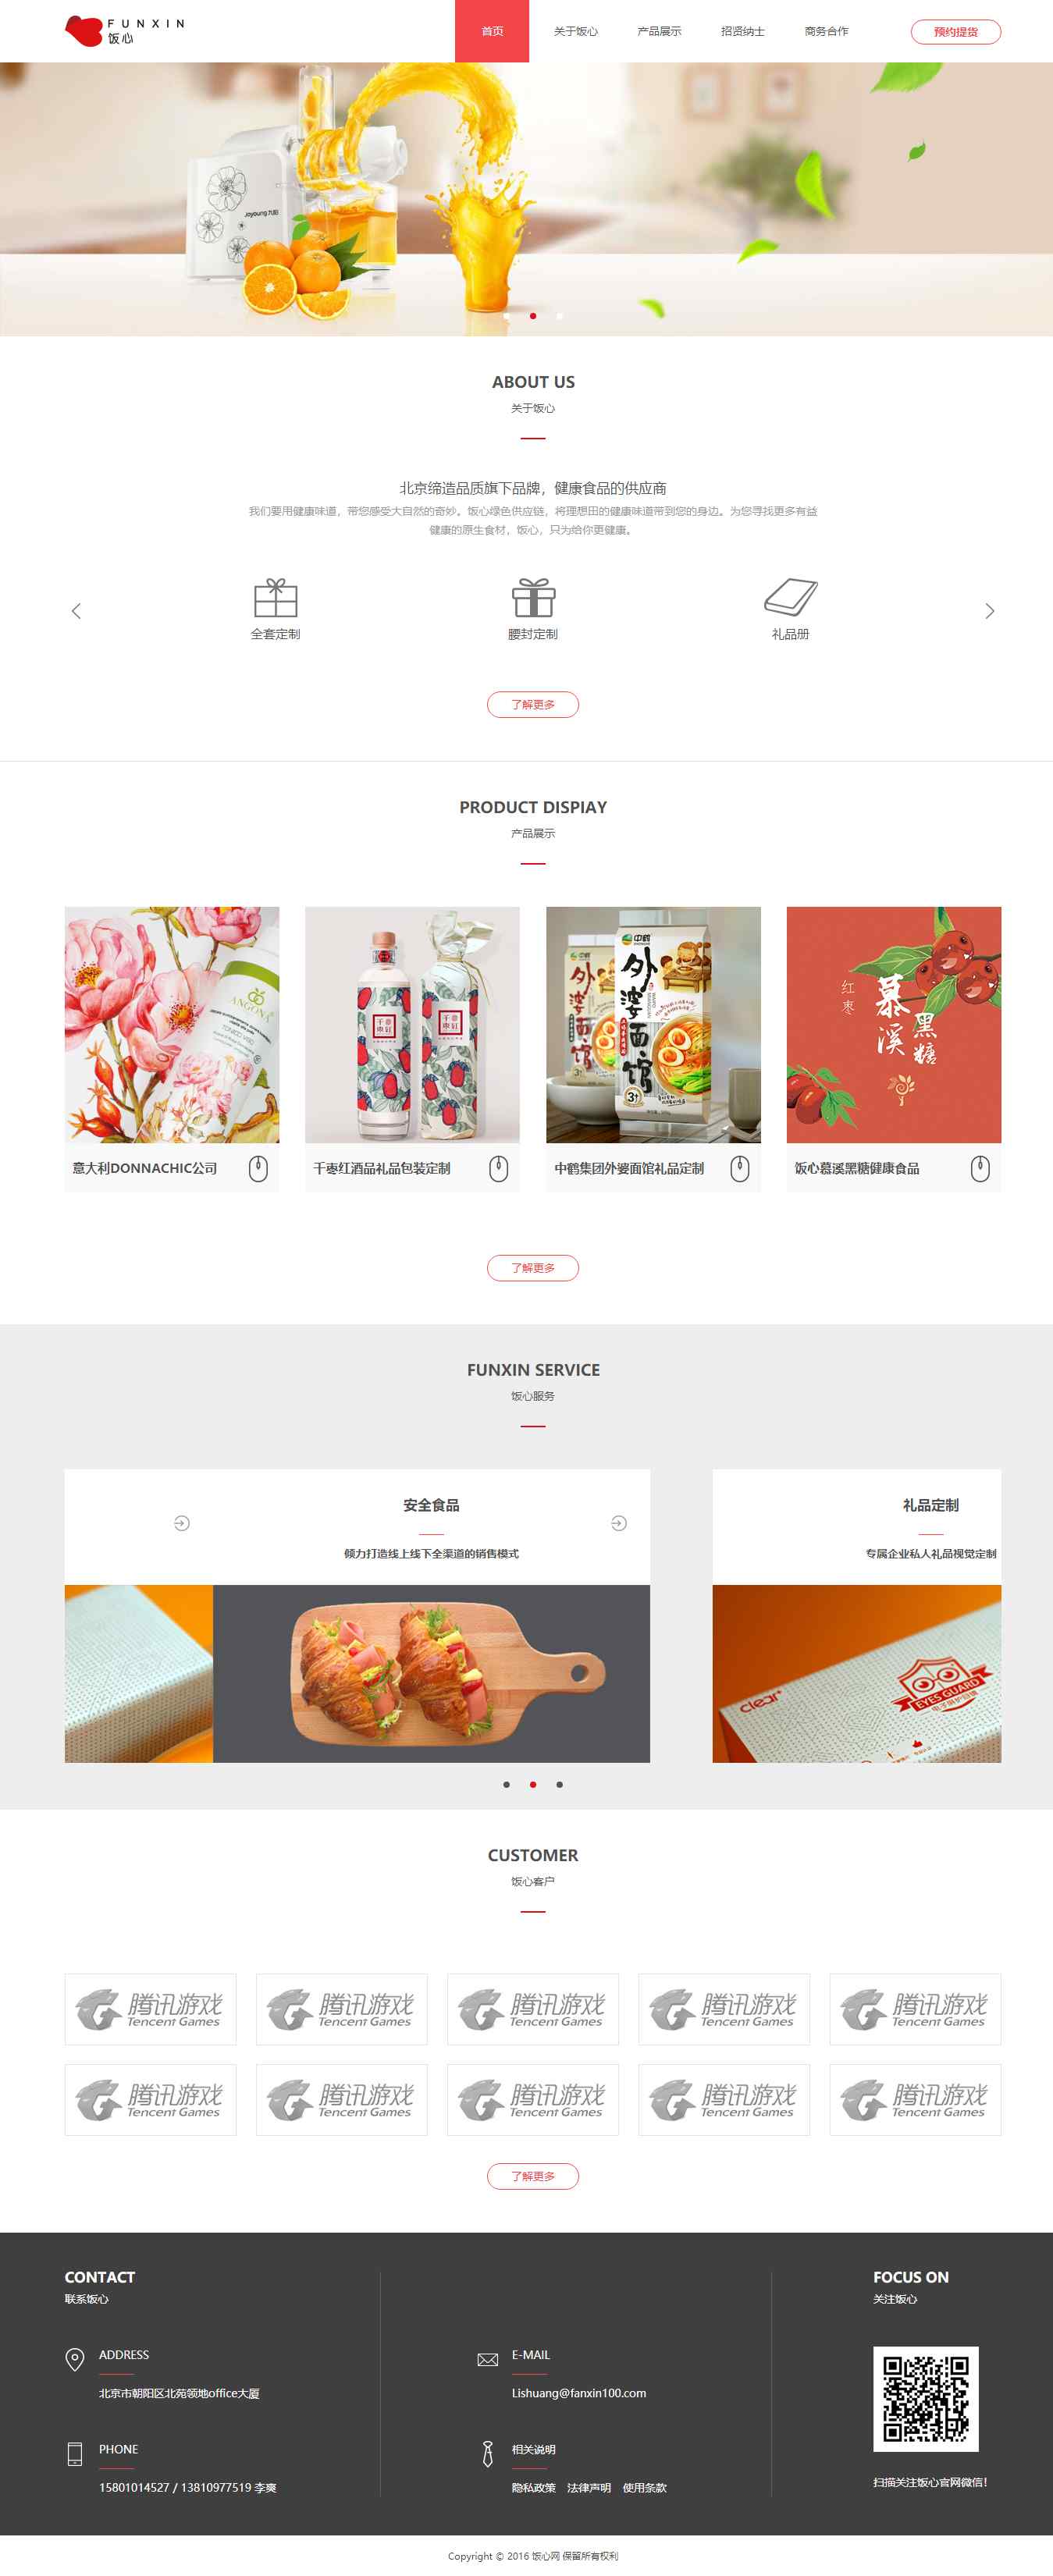 红色简洁风格的礼品包装品牌企业网站源码下载